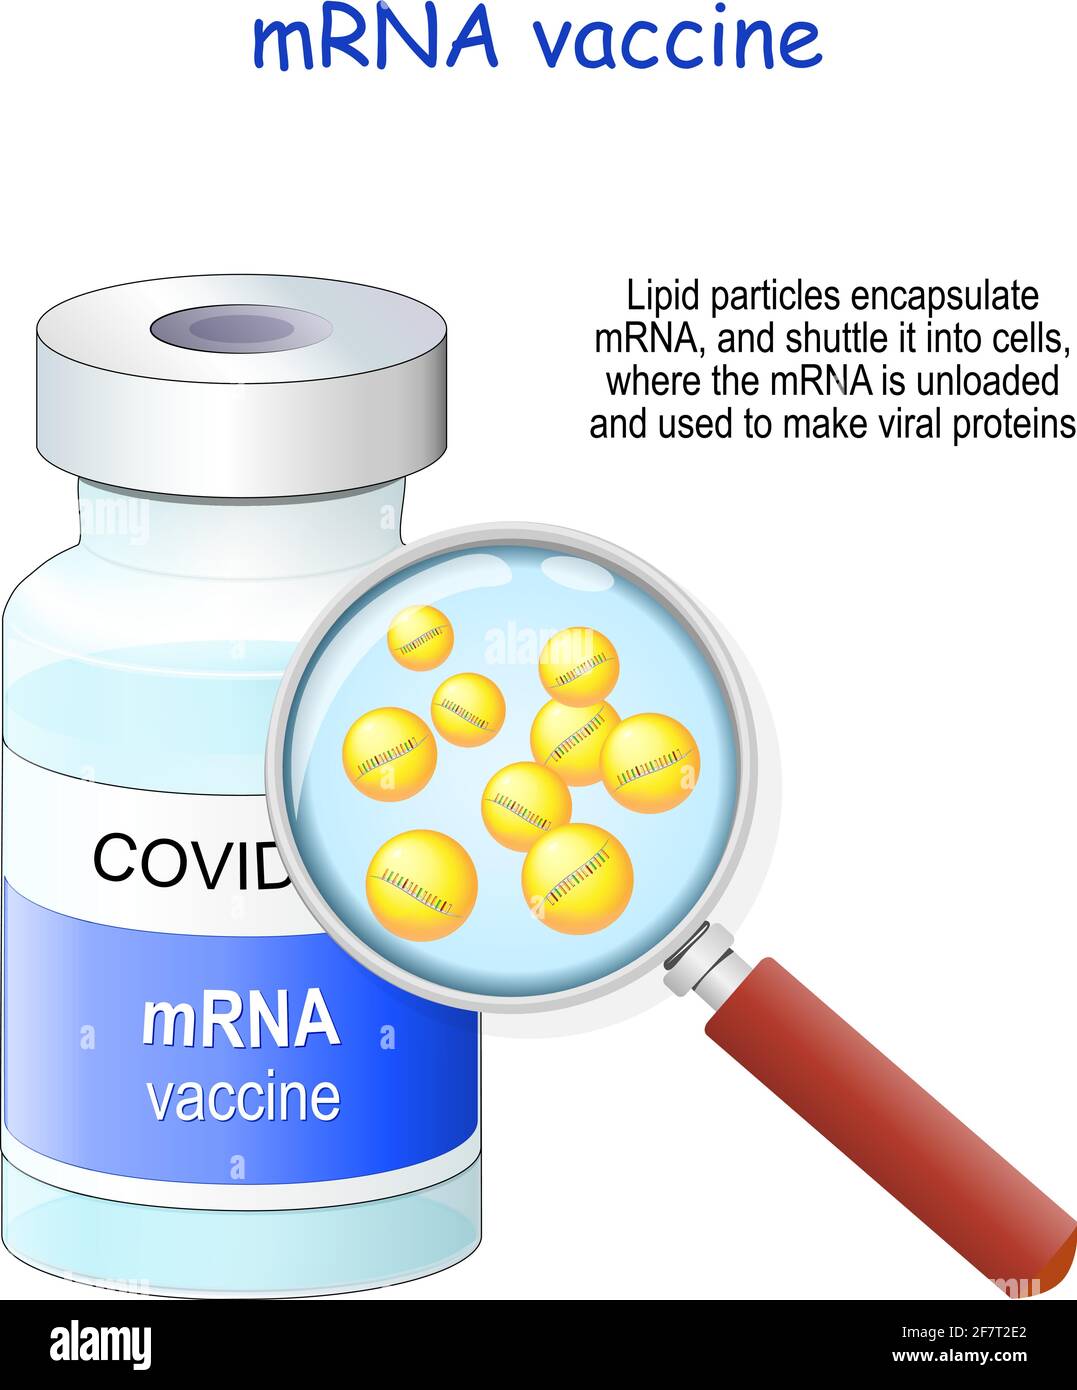 Covid-19 coronavirus vaccino messenger RNA (mRNA) flaconcino di vaccino e lente di ingrandimento. Illustrazione vettoriale. Le particelle lipidiche incapsulano l'mRNA e si chiudono Illustrazione Vettoriale